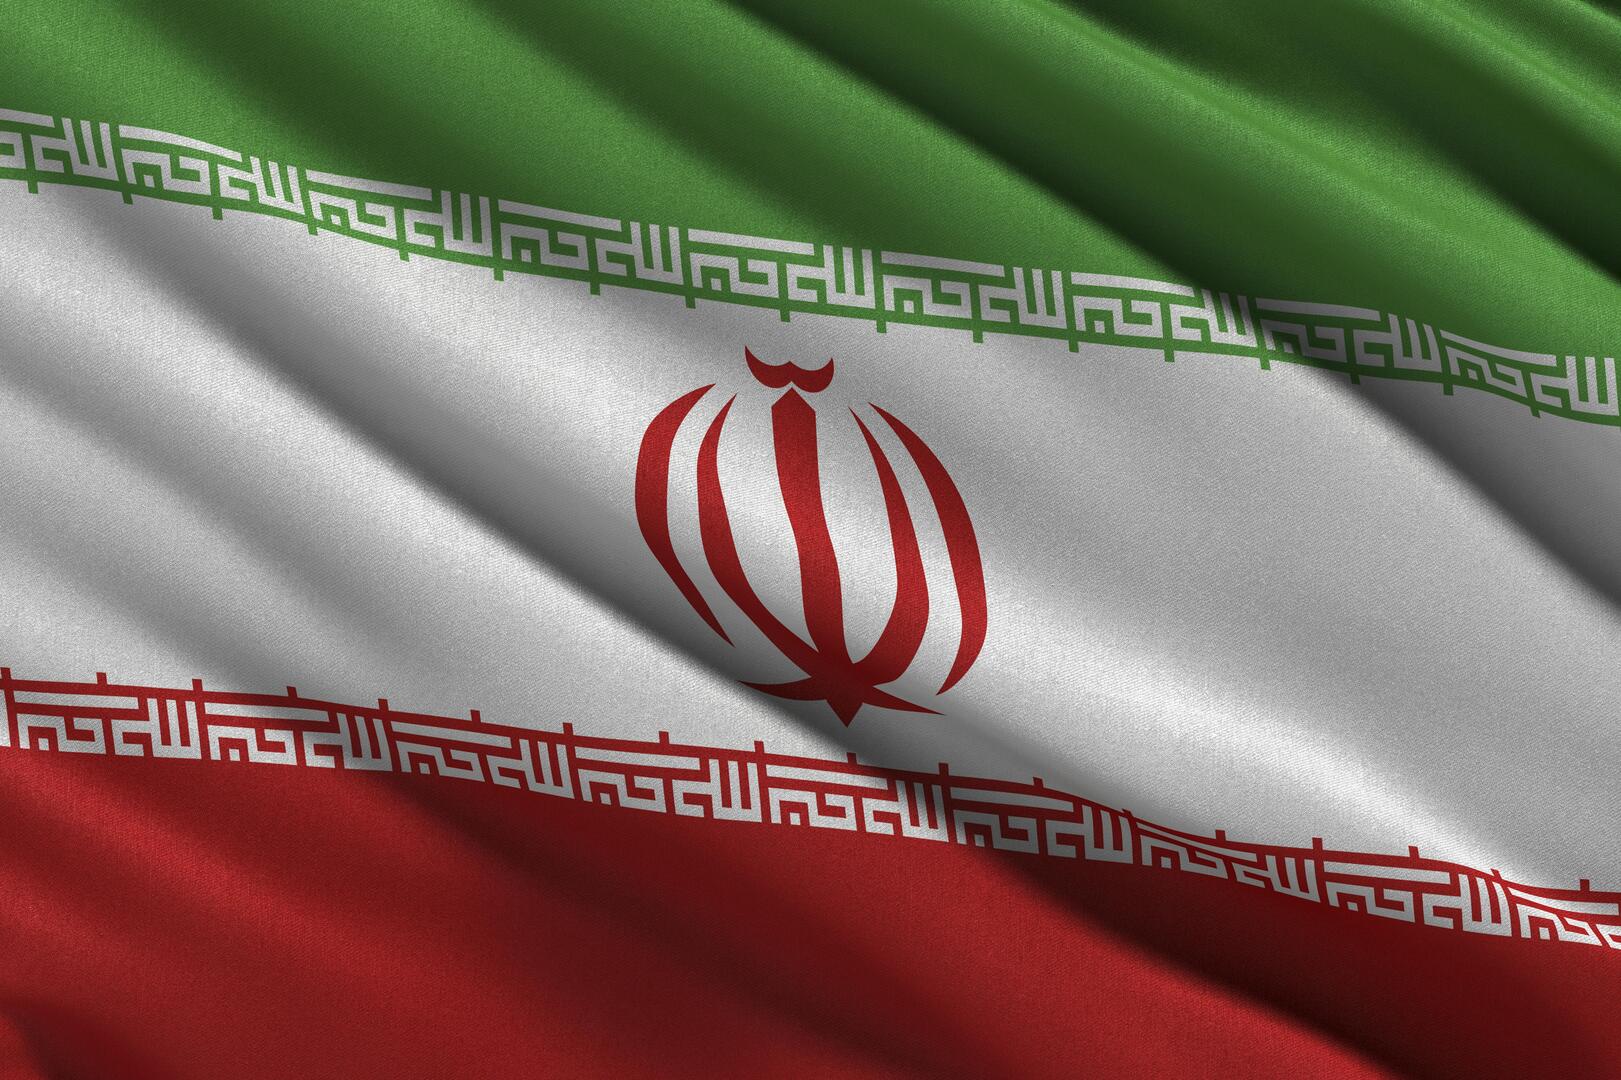 إيران توقع اتفاقية تجارية تفتح لها سوقا بـ190 مليون مستهلك